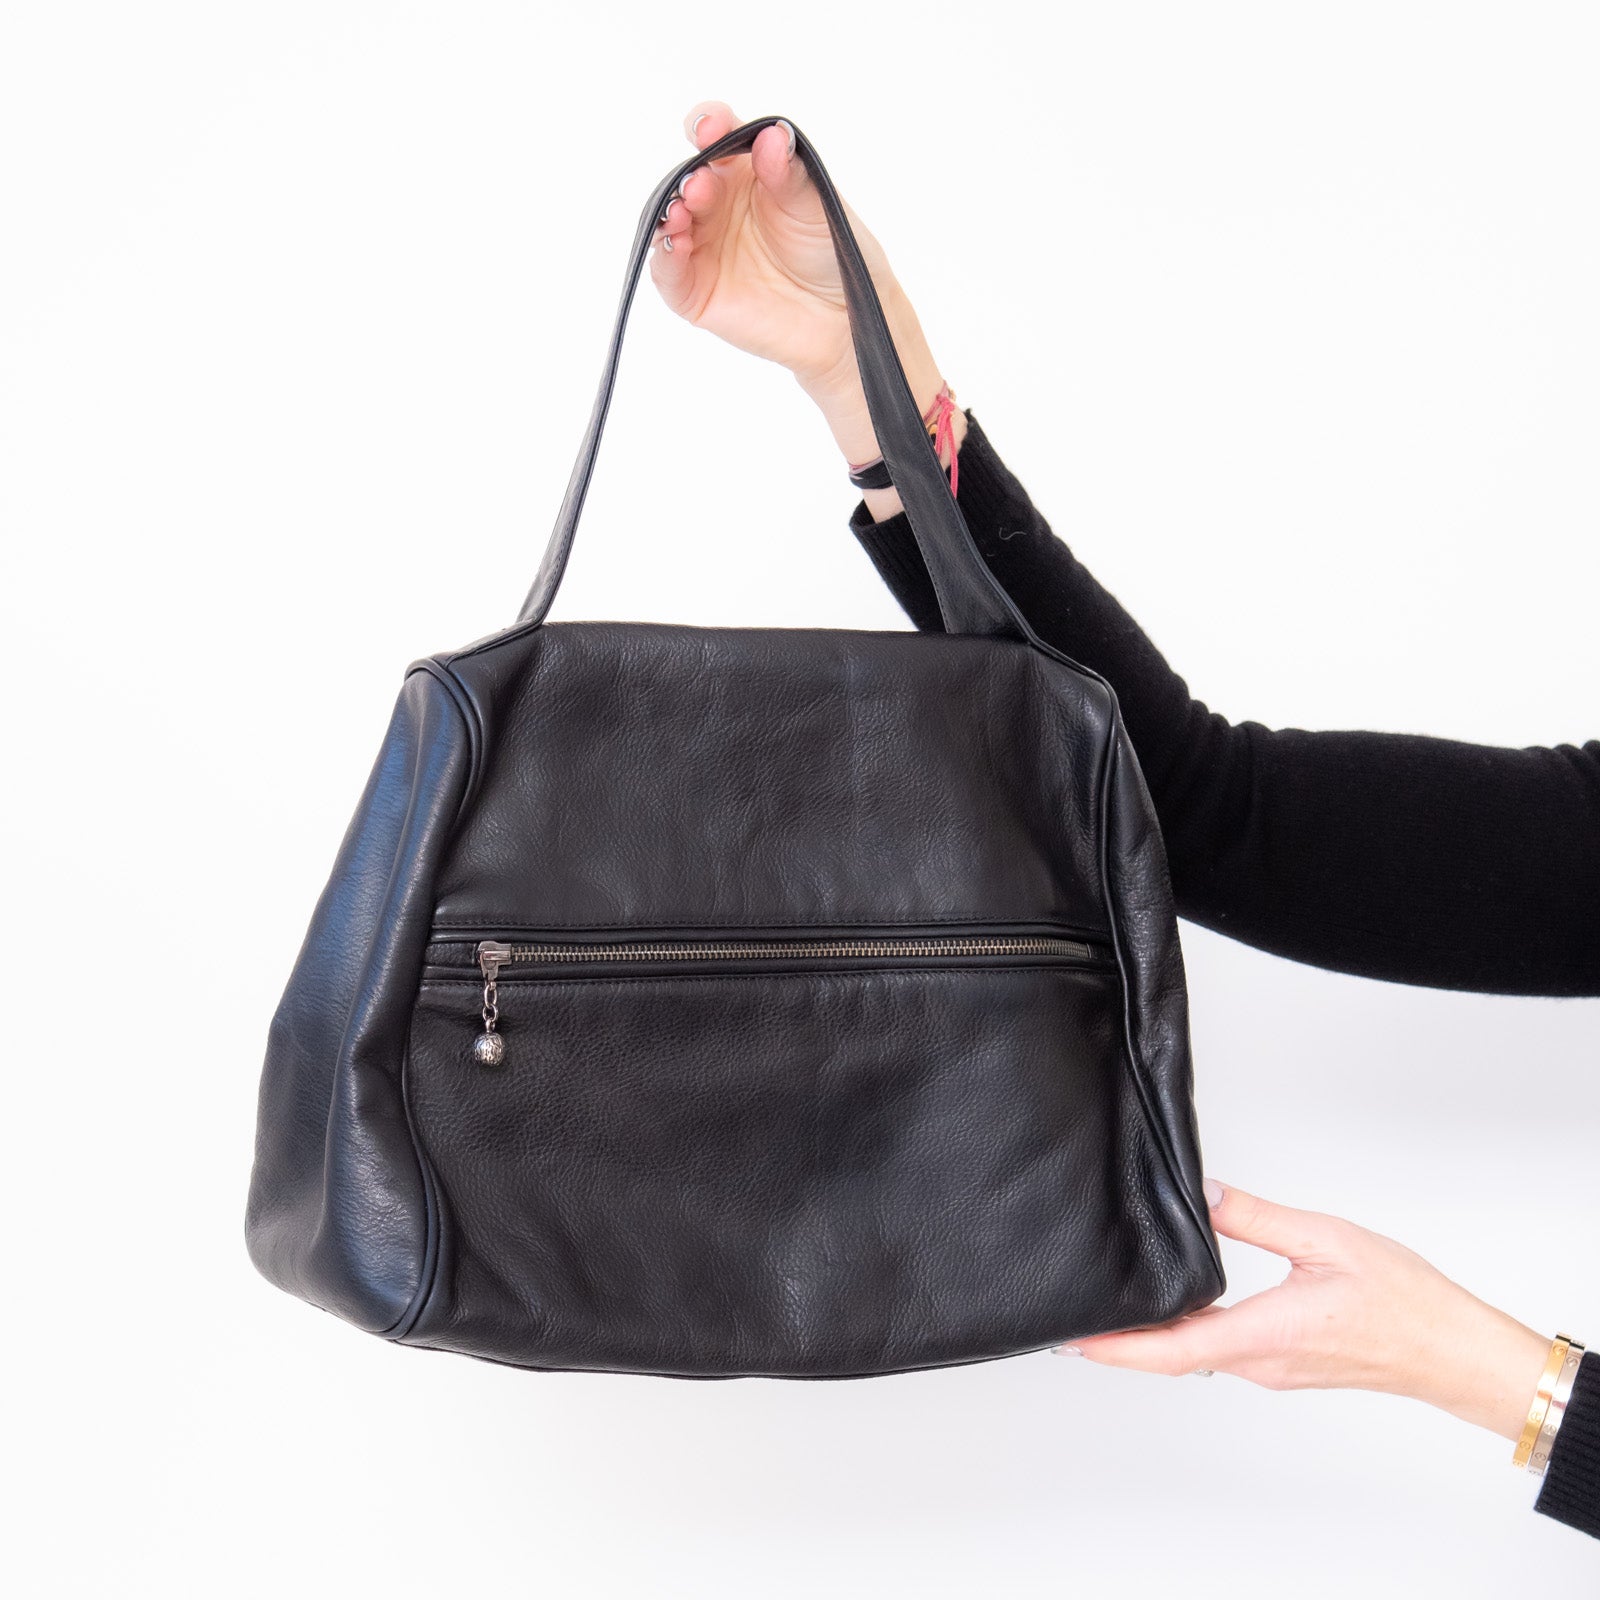 Erva Black Leather Bag - Image 3 of 7